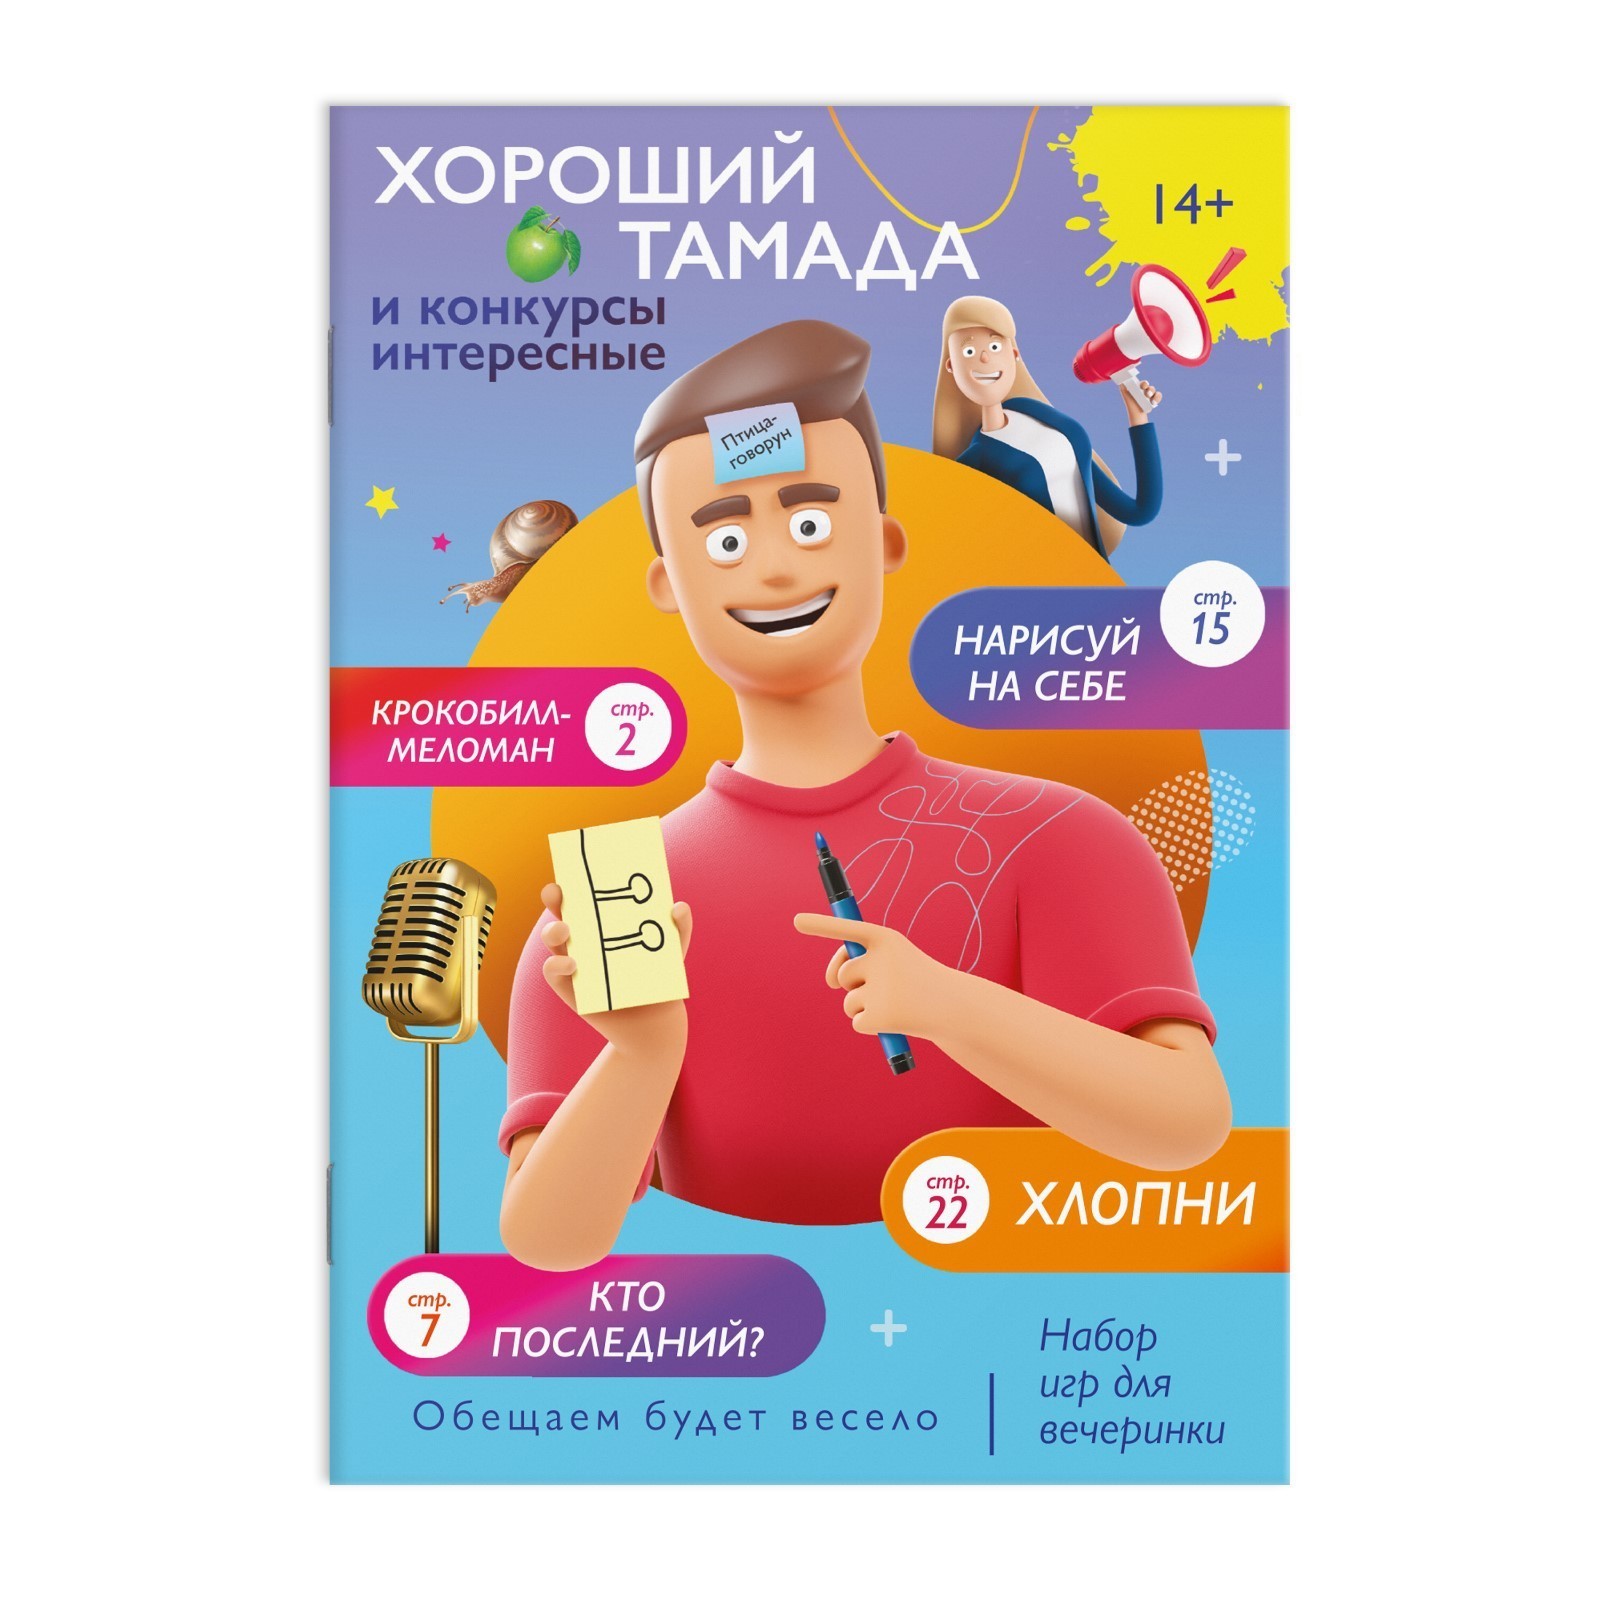 Лас Играс - купить набор игр для вечеринки Хороший тамада и конкурсы интересные», 14+, цены в Москве на Мегамаркет